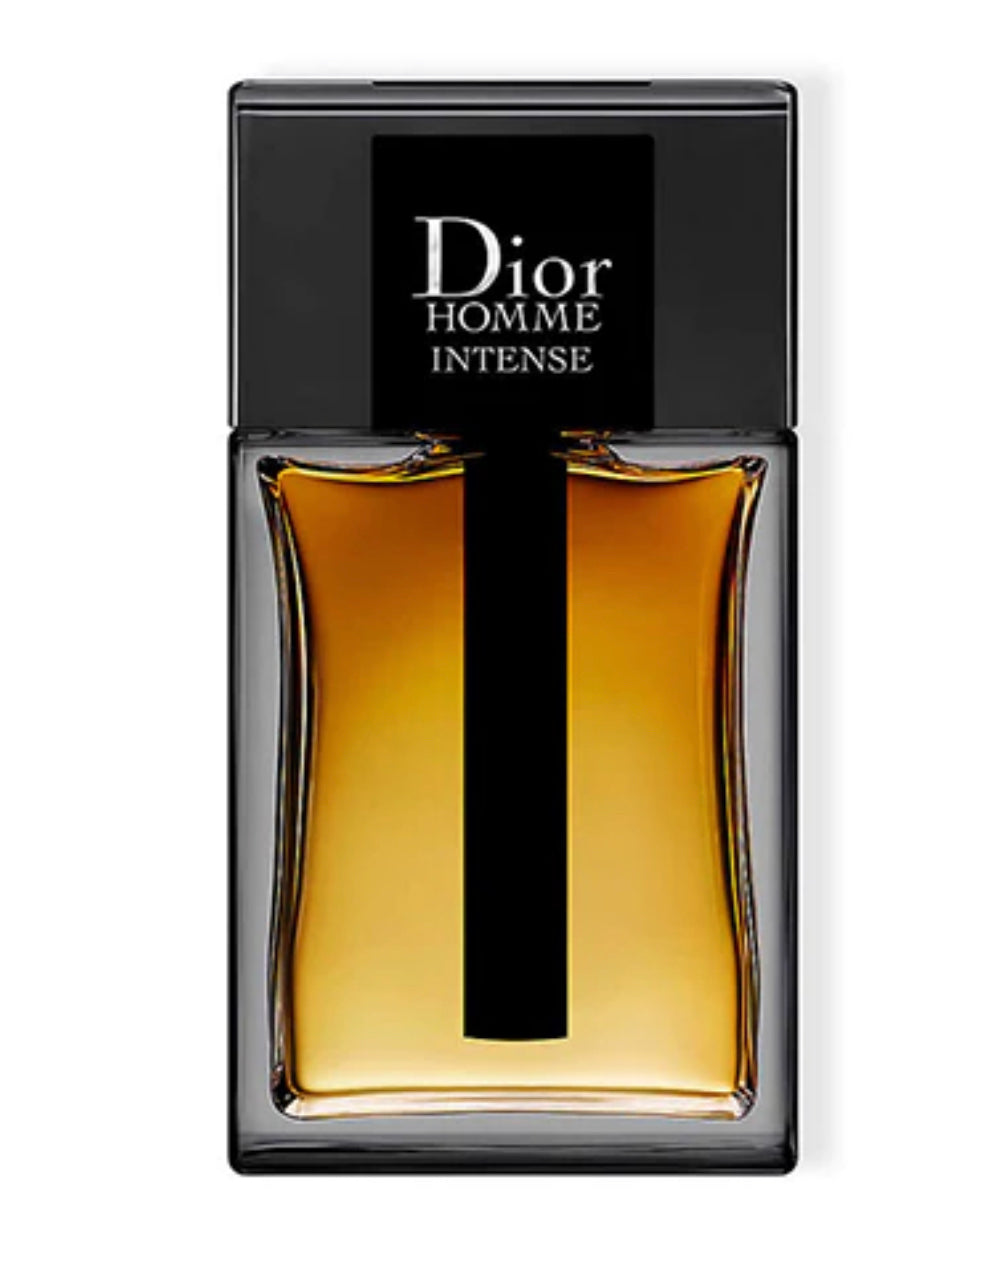 Dior Homme Intense EDP Eau De Parfum Samples